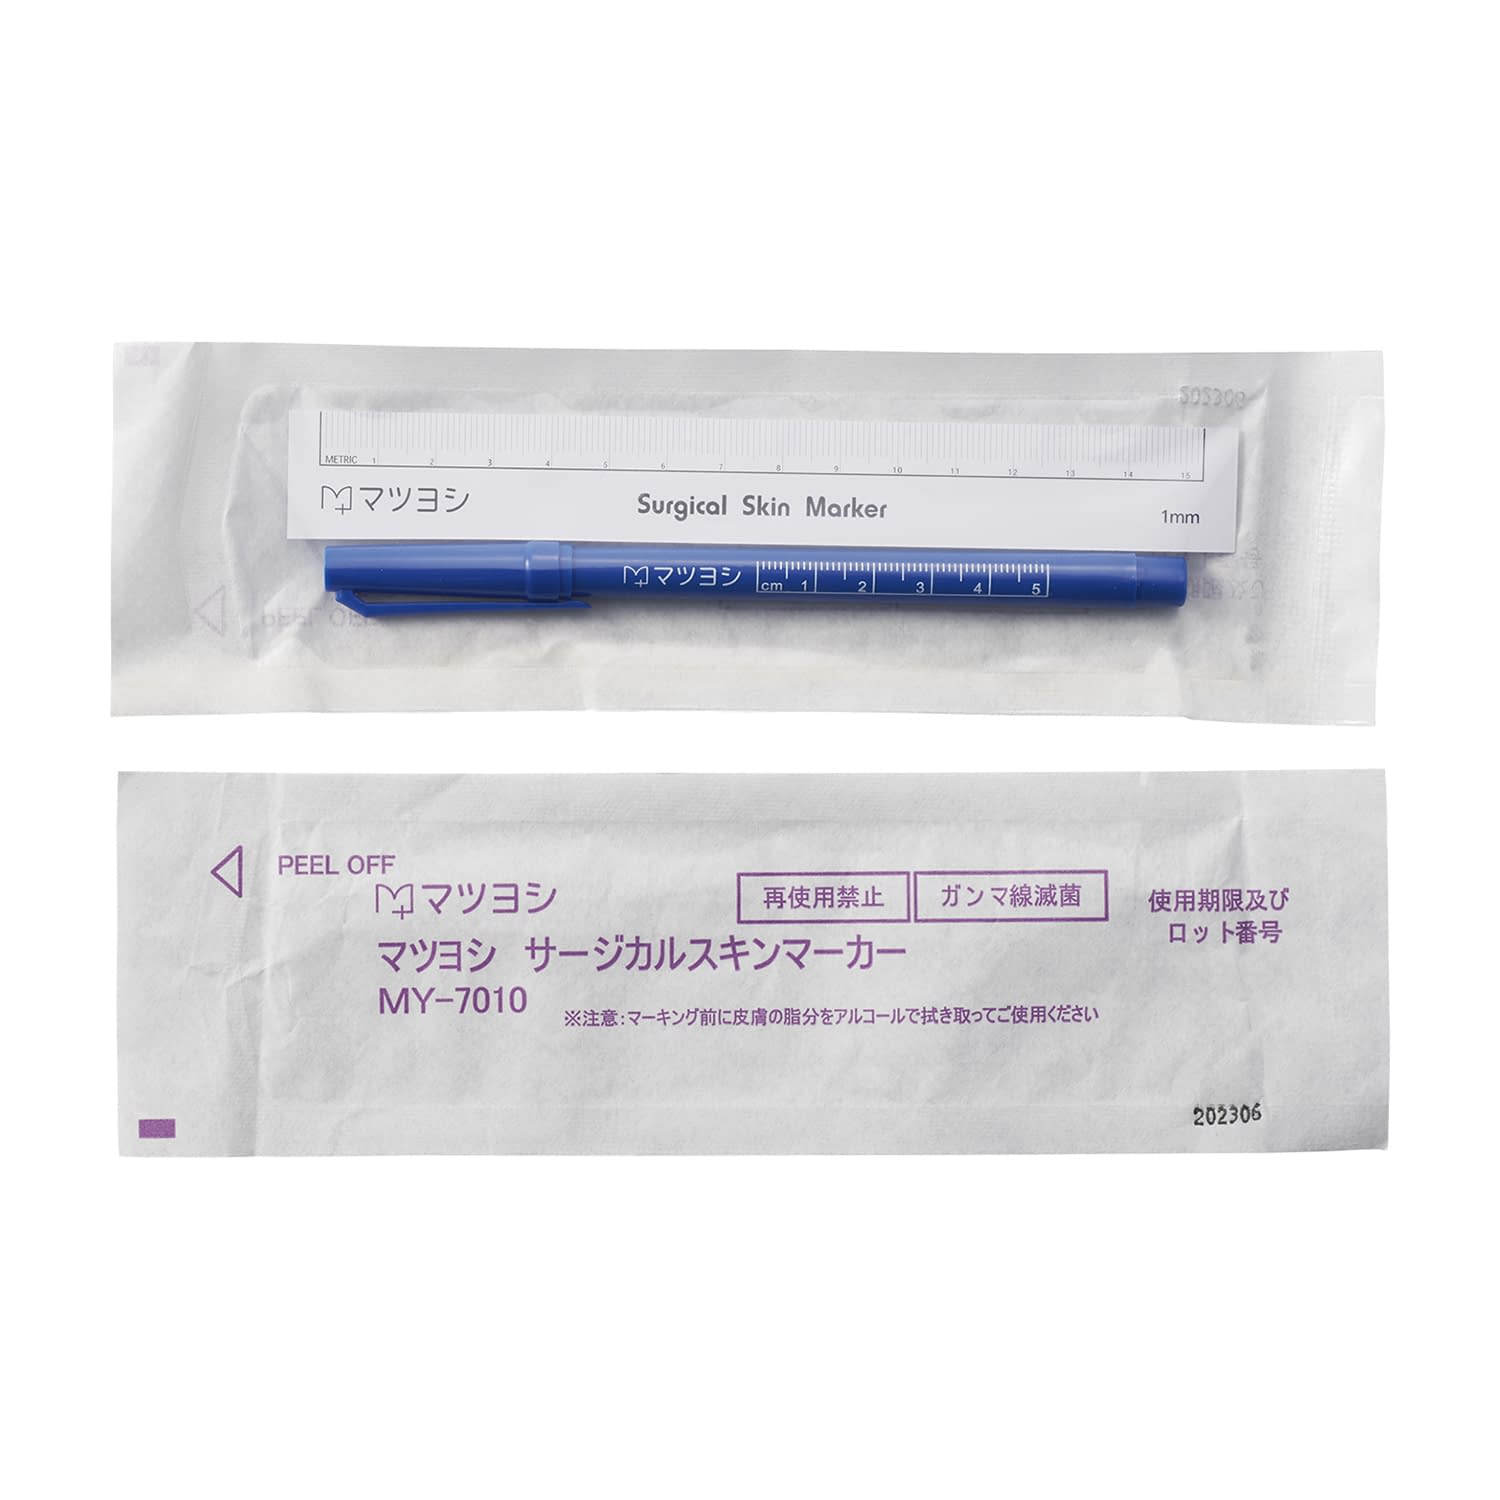 (24-6031-00)マイスコサージカルスキンマーカー MY-7010(10ﾎﾟﾝｲﾘ) ﾏｲｽｺｻｰｼﾞｶﾙｽｷﾝﾏｰｶｰ【1袋単位】【2019年カタログ商品】